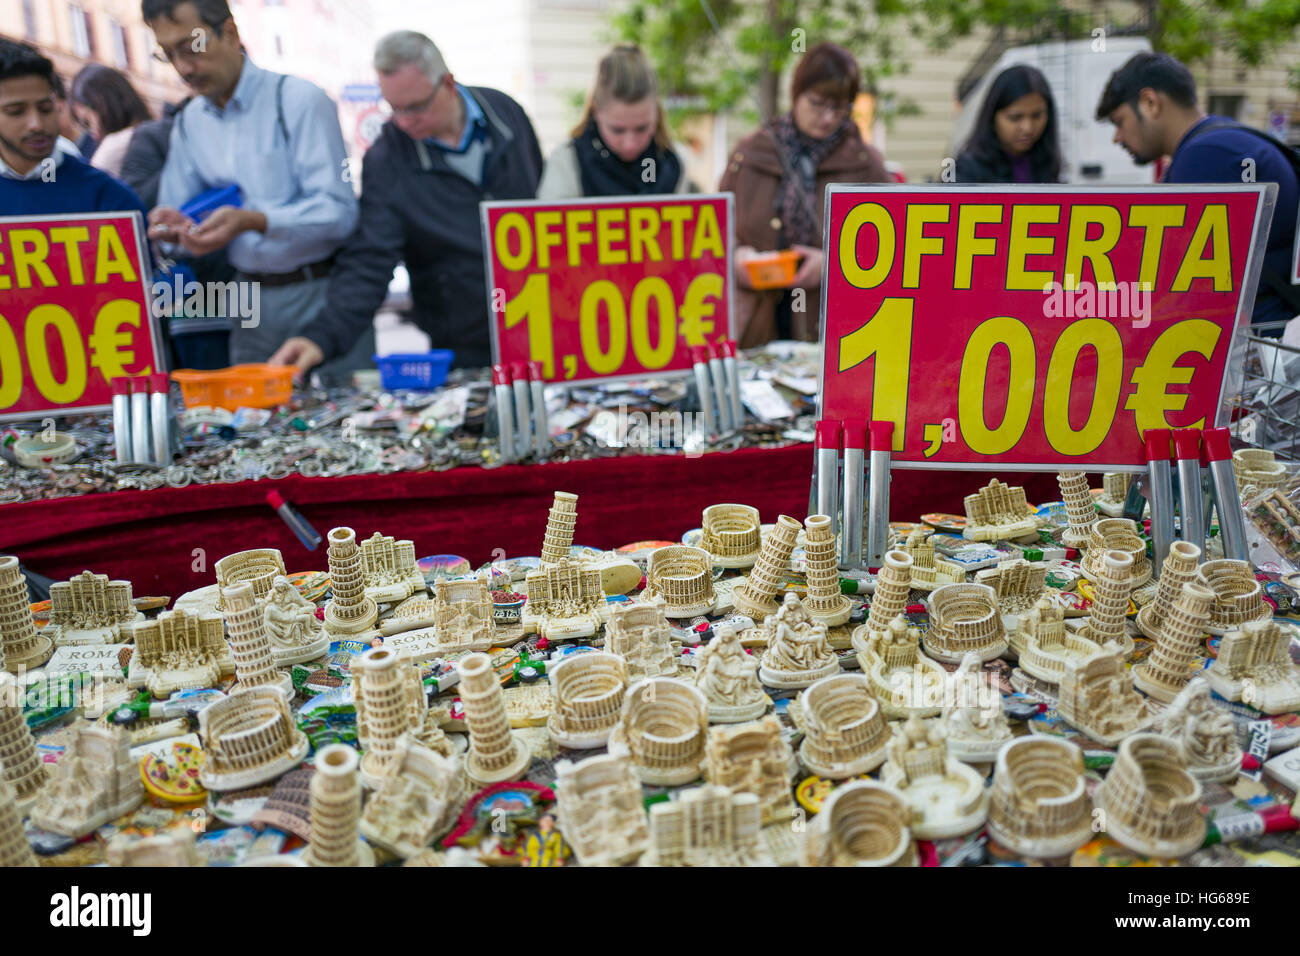 Italienische Souvenirs zum Verkauf in Rom Stockfotografie - Alamy